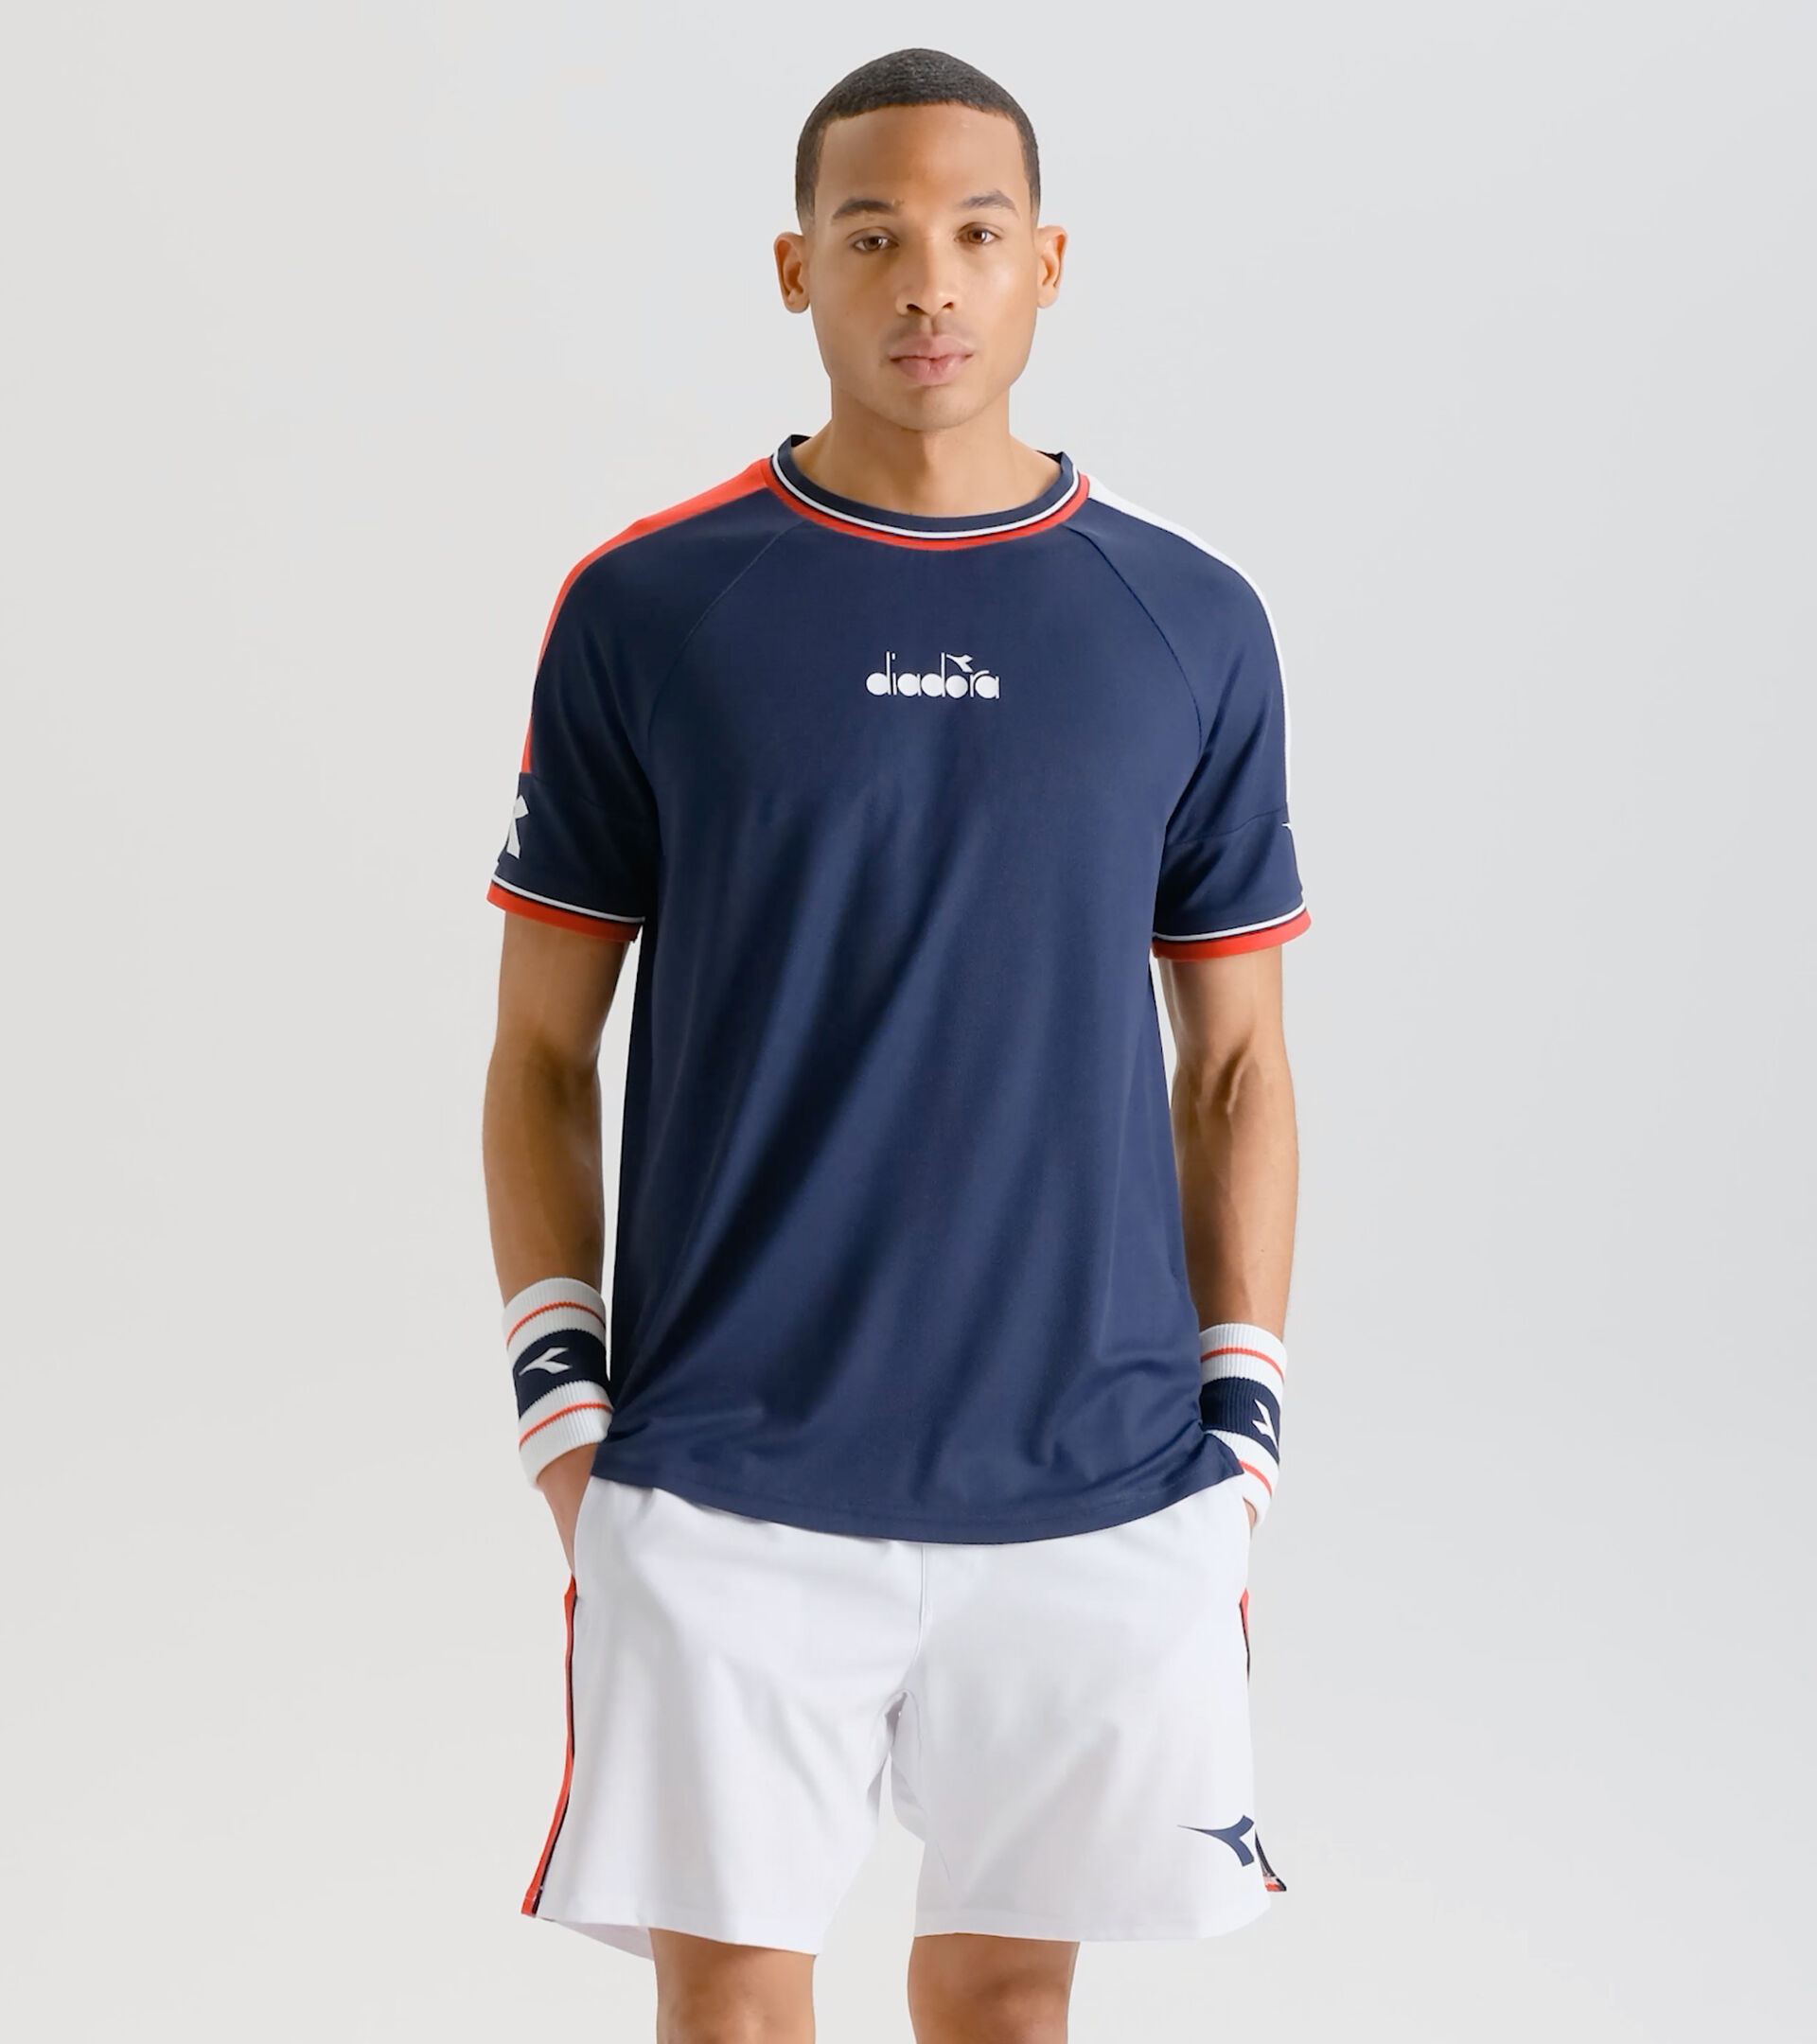 Vervagen Geheugen steen SS T-SHIRT ICON Tennis t-shirt - Men - Diadora Online Store US